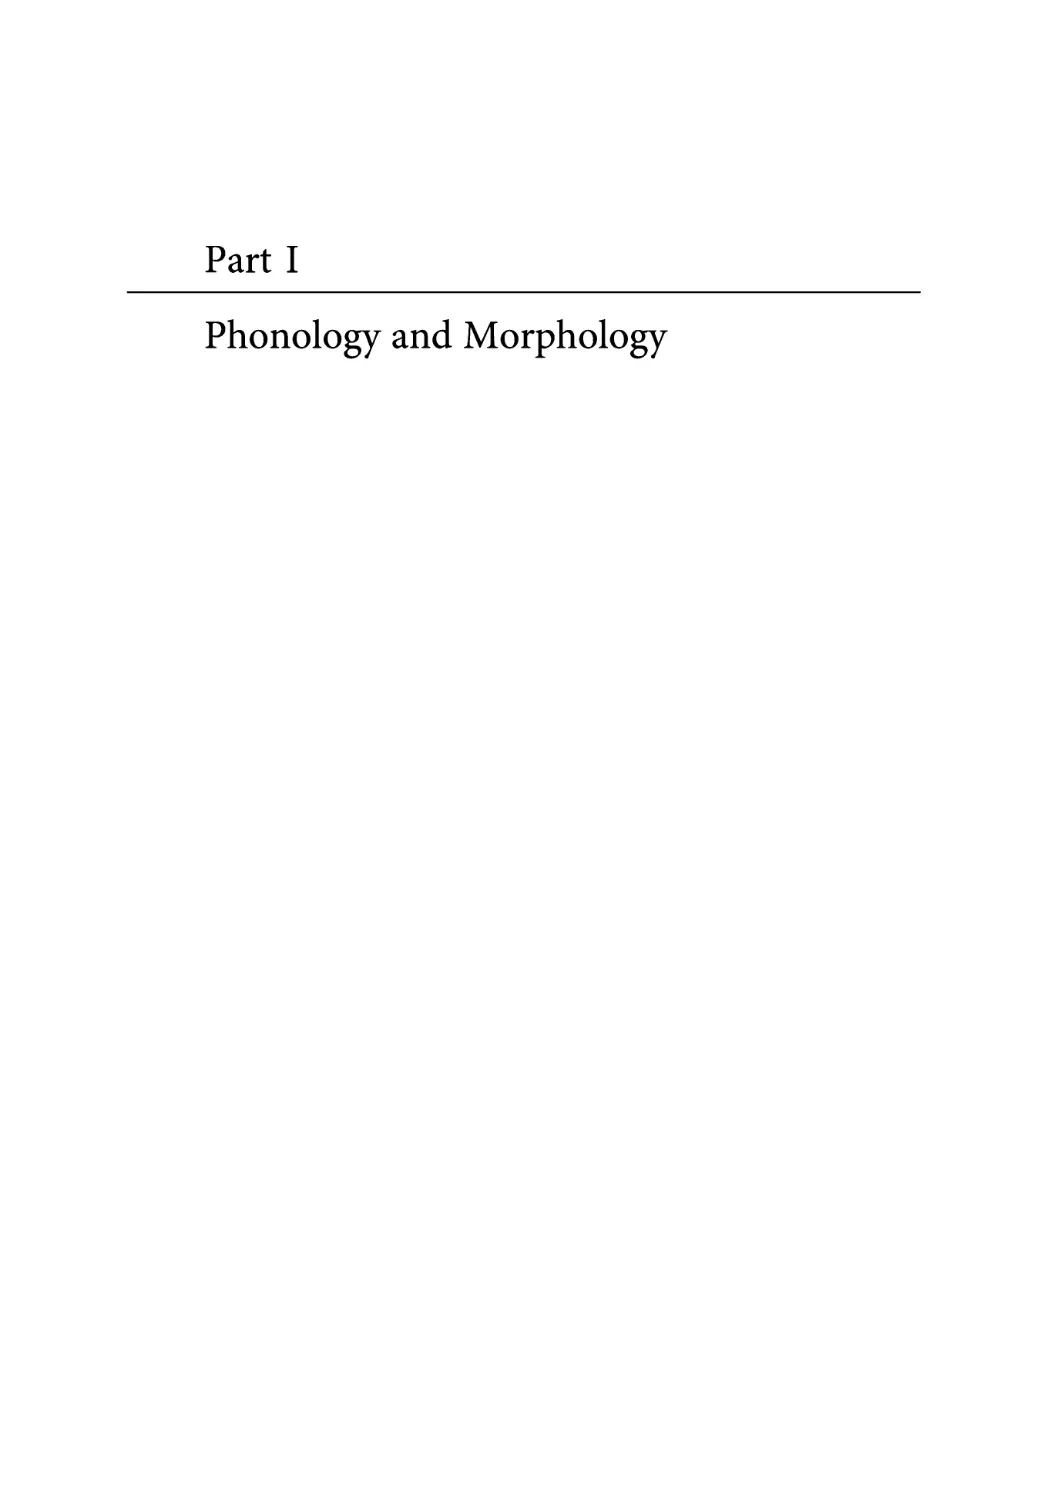 Part I: Phonology and Morphology